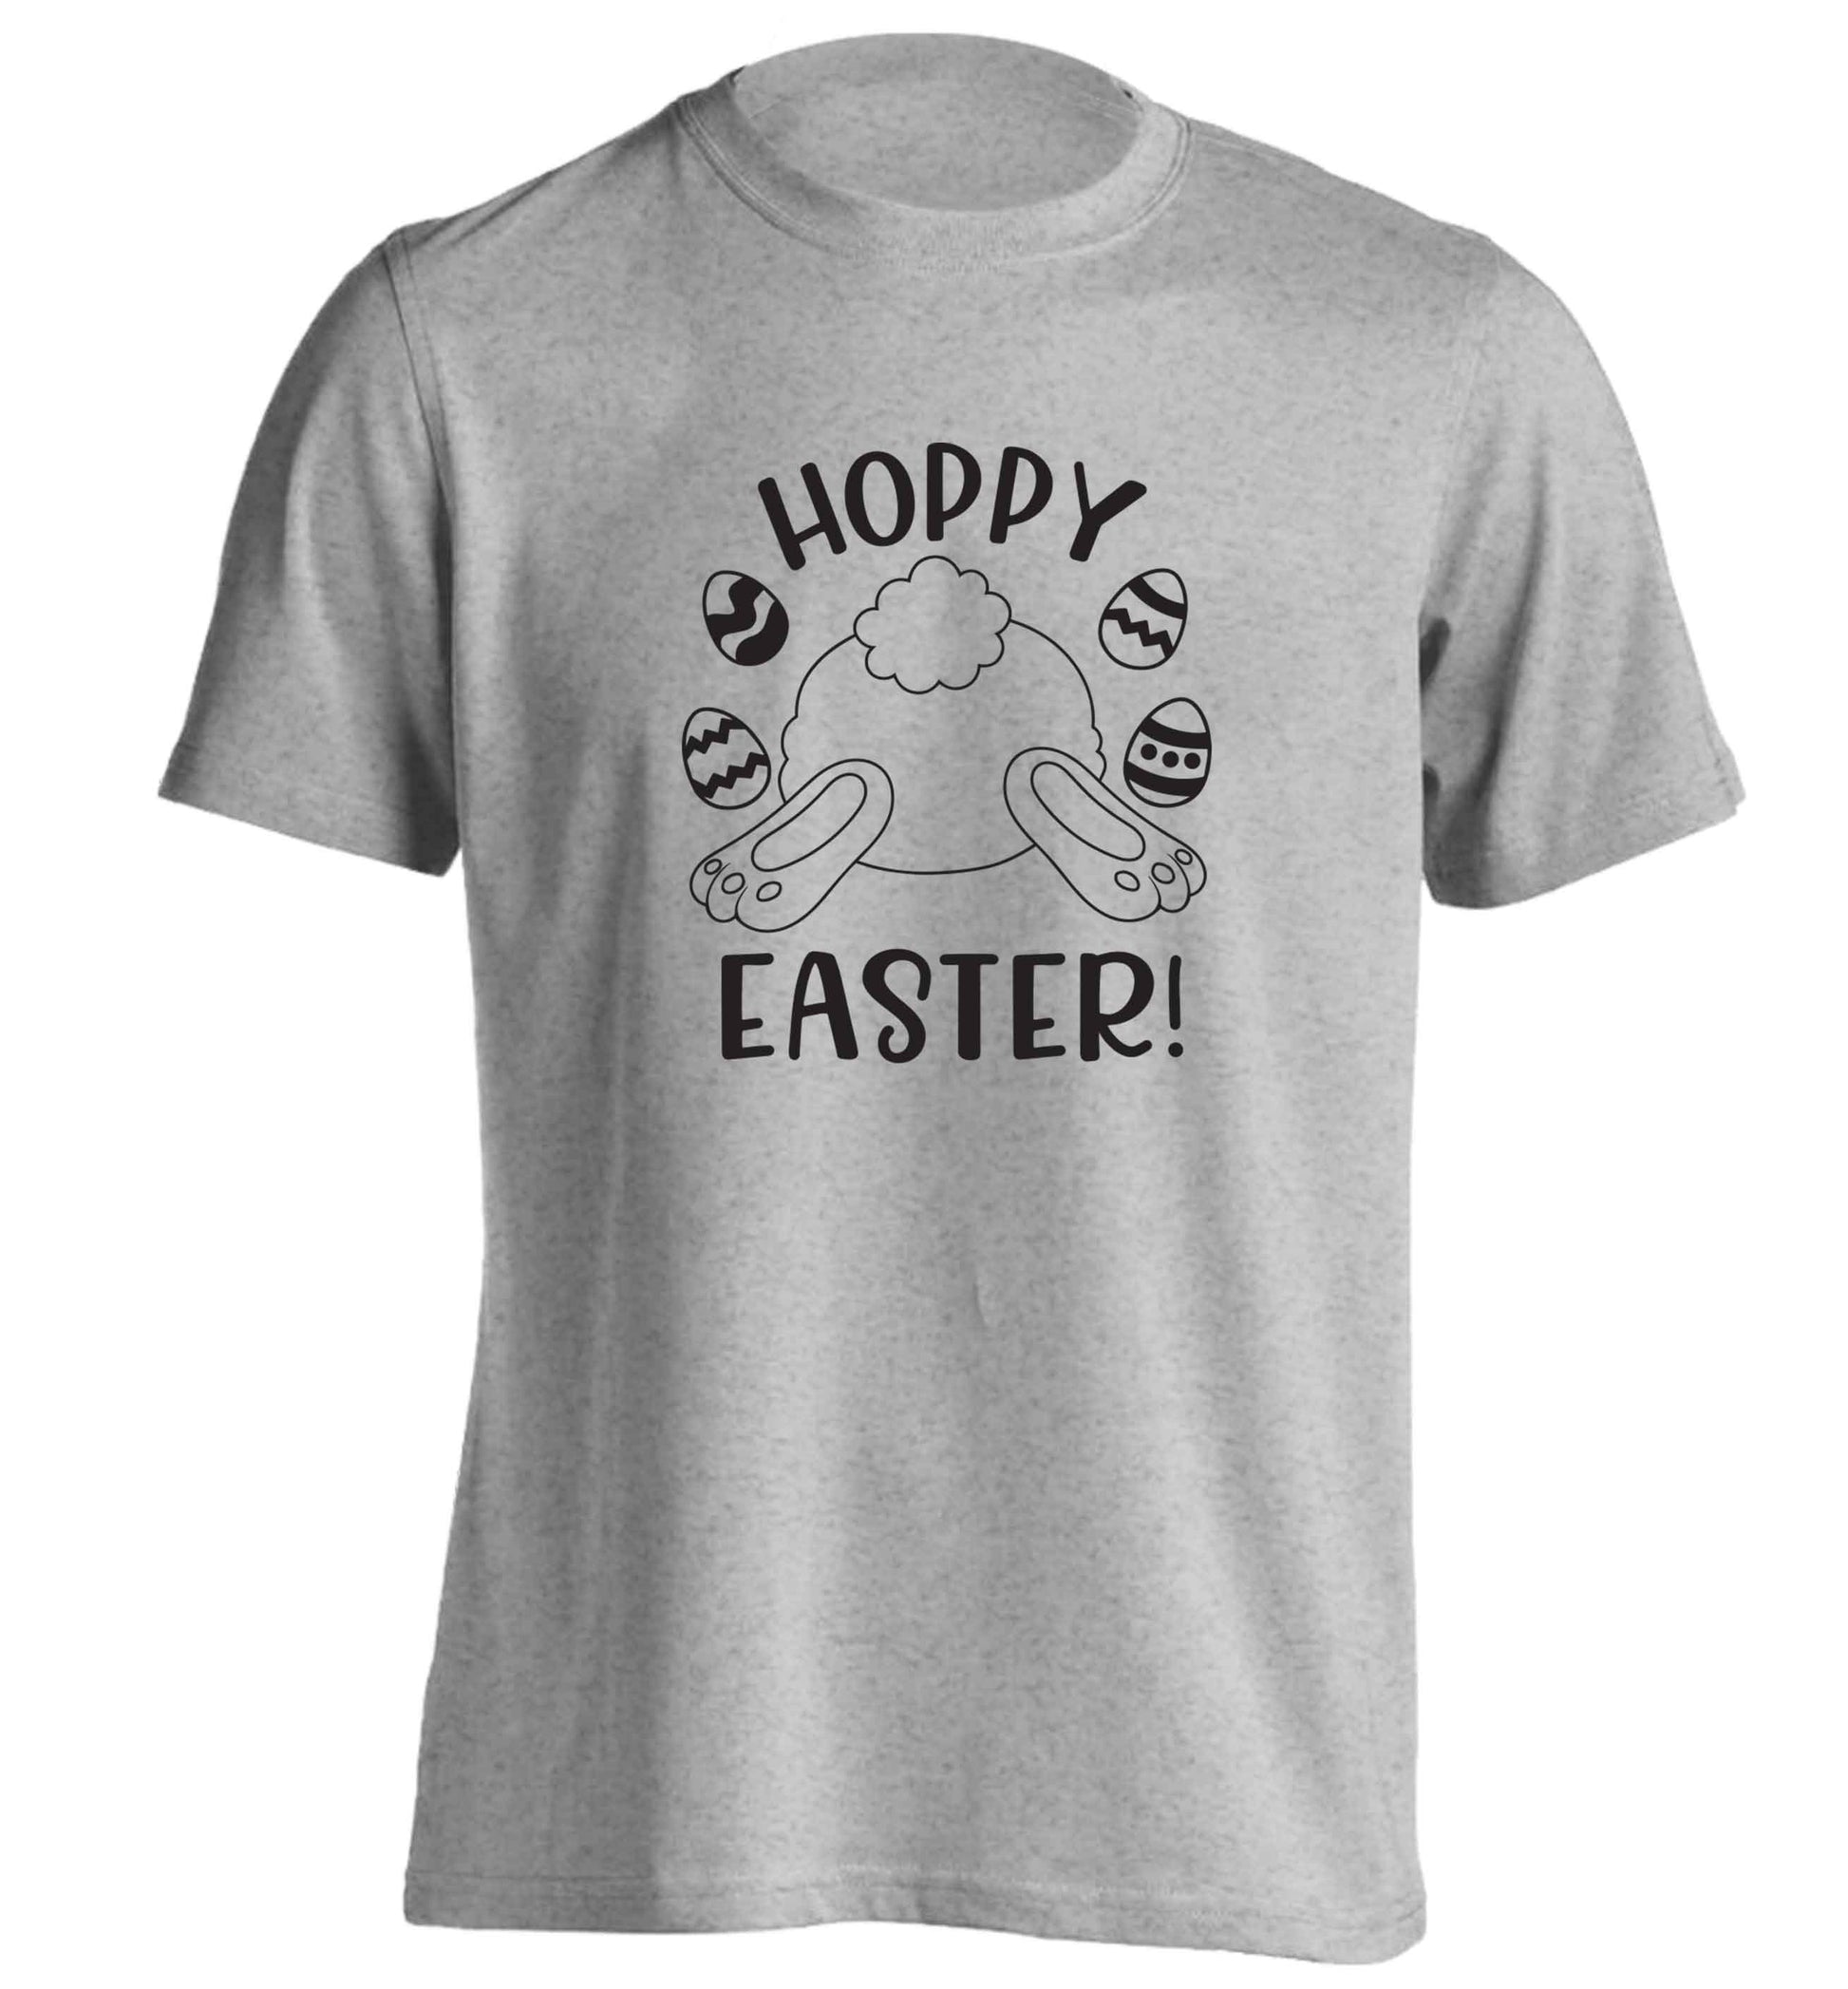 Hoppy Easter adults unisex grey Tshirt 2XL